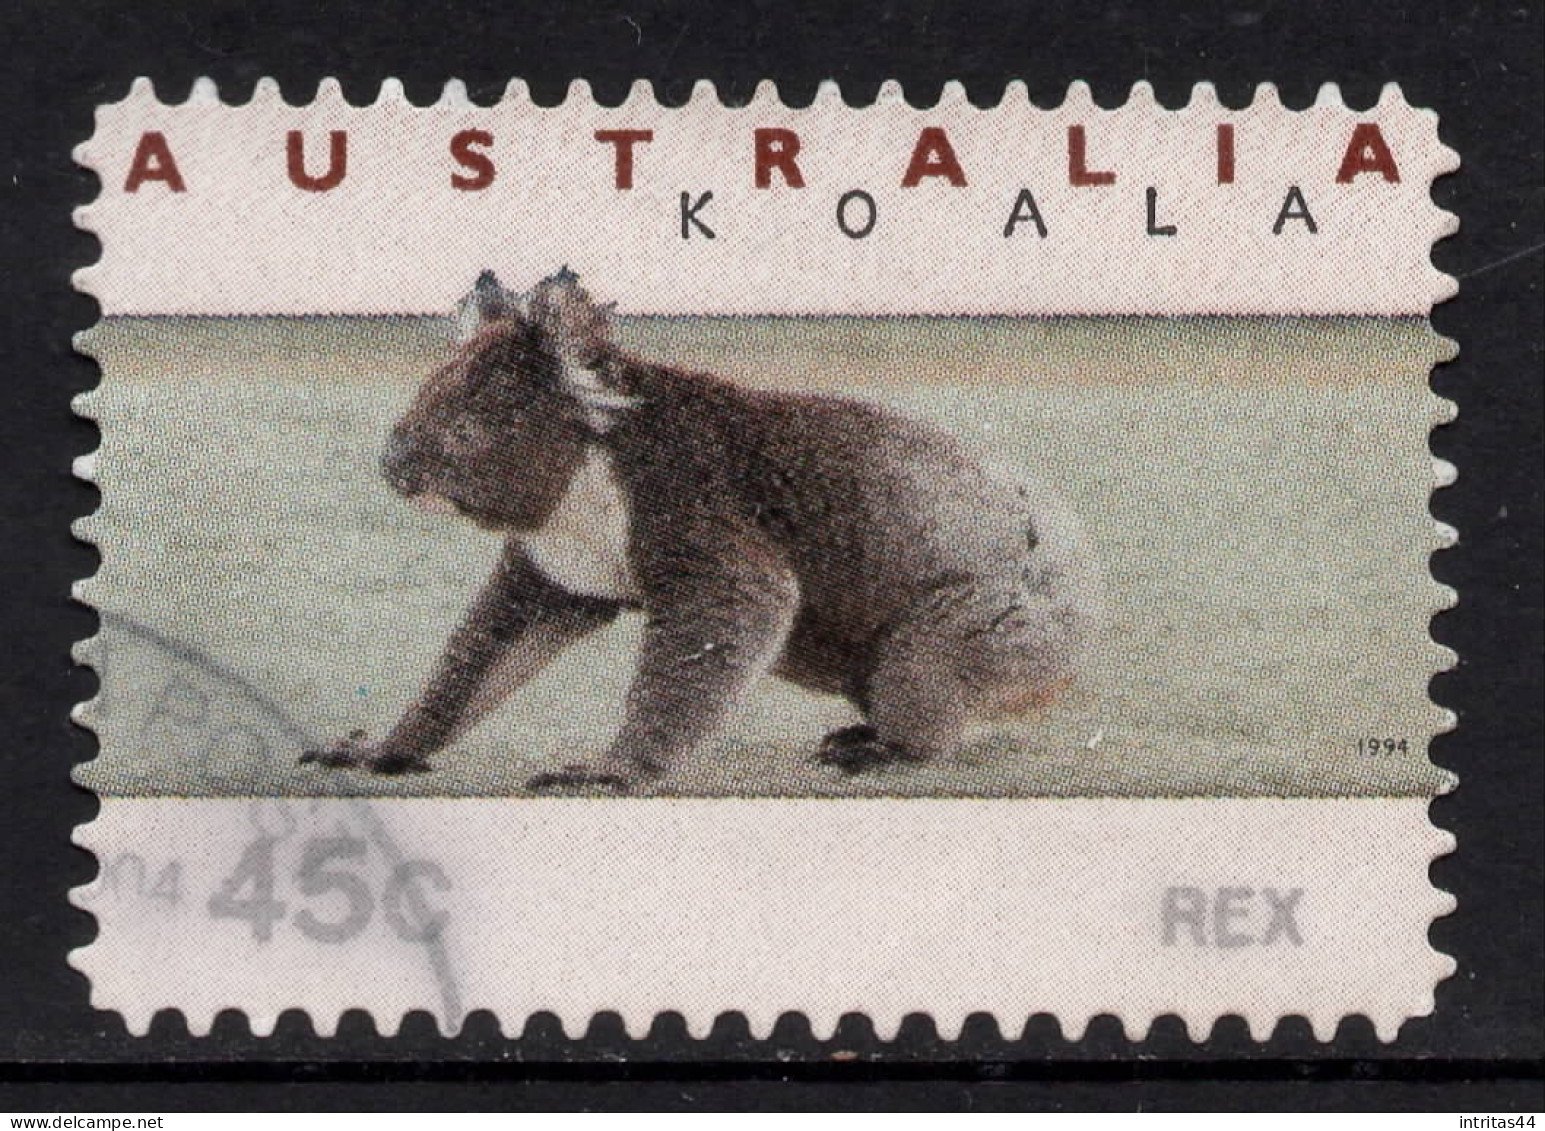 AUSTRALIA 1994 KOALA AND KANGAROO (COUNTER PRINTED) "45c KOALA ON GROUND" STAMP VFU - Gebruikt